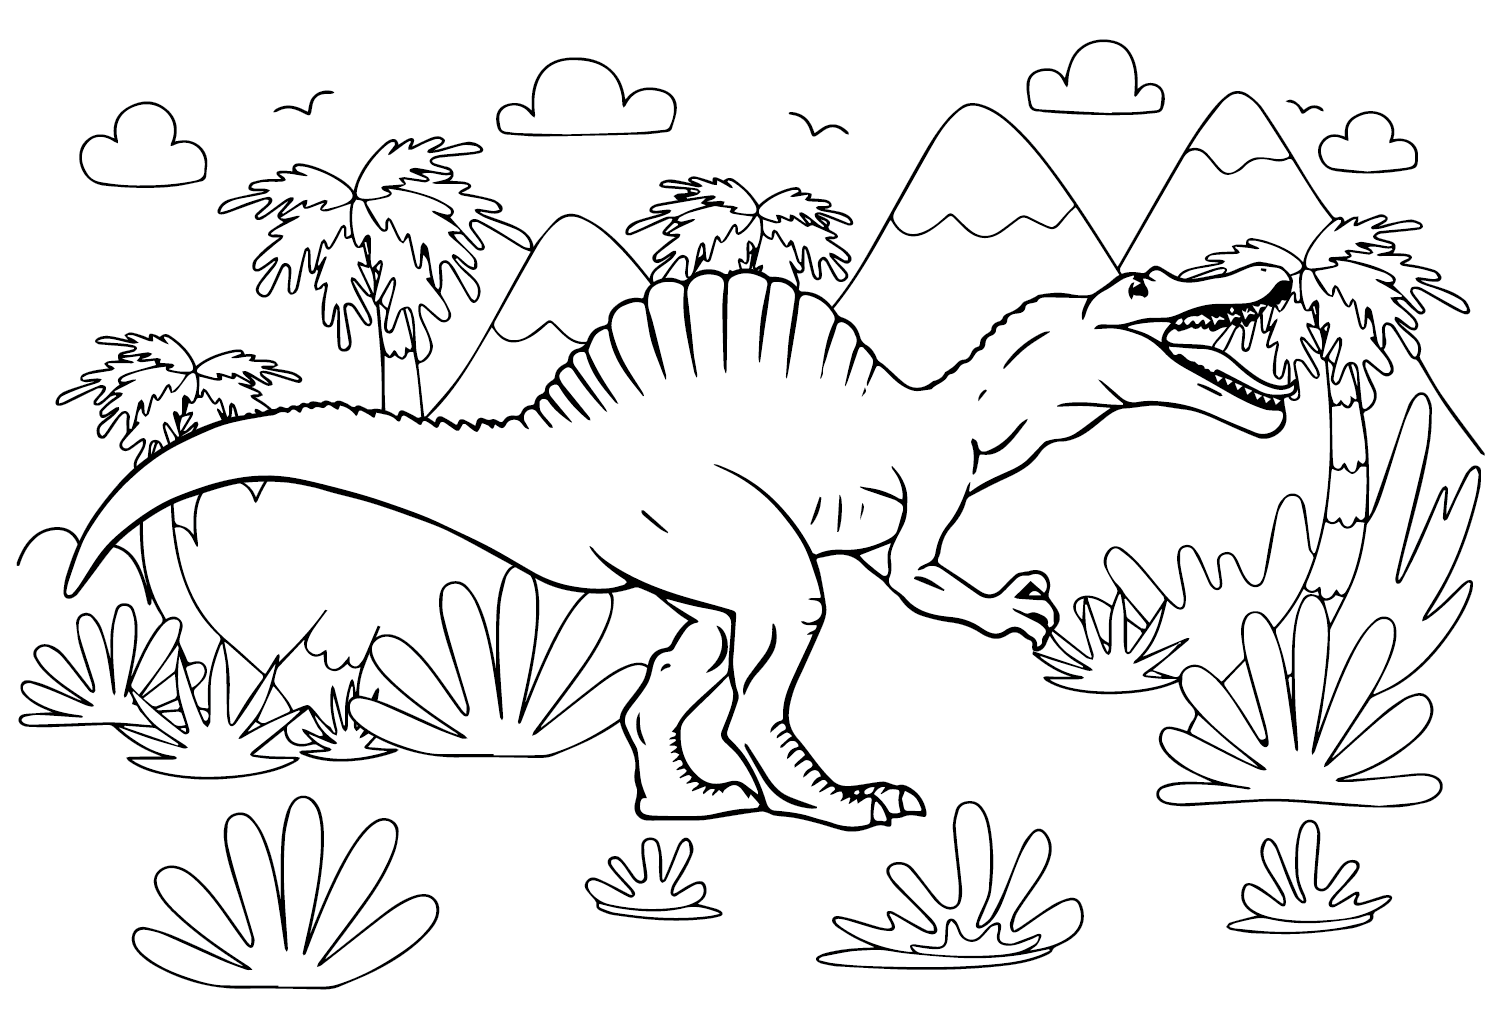 صور سبينوصور إيجيبتياكوس صفحة التلوين من سبينوصور إيجيبتياكوس